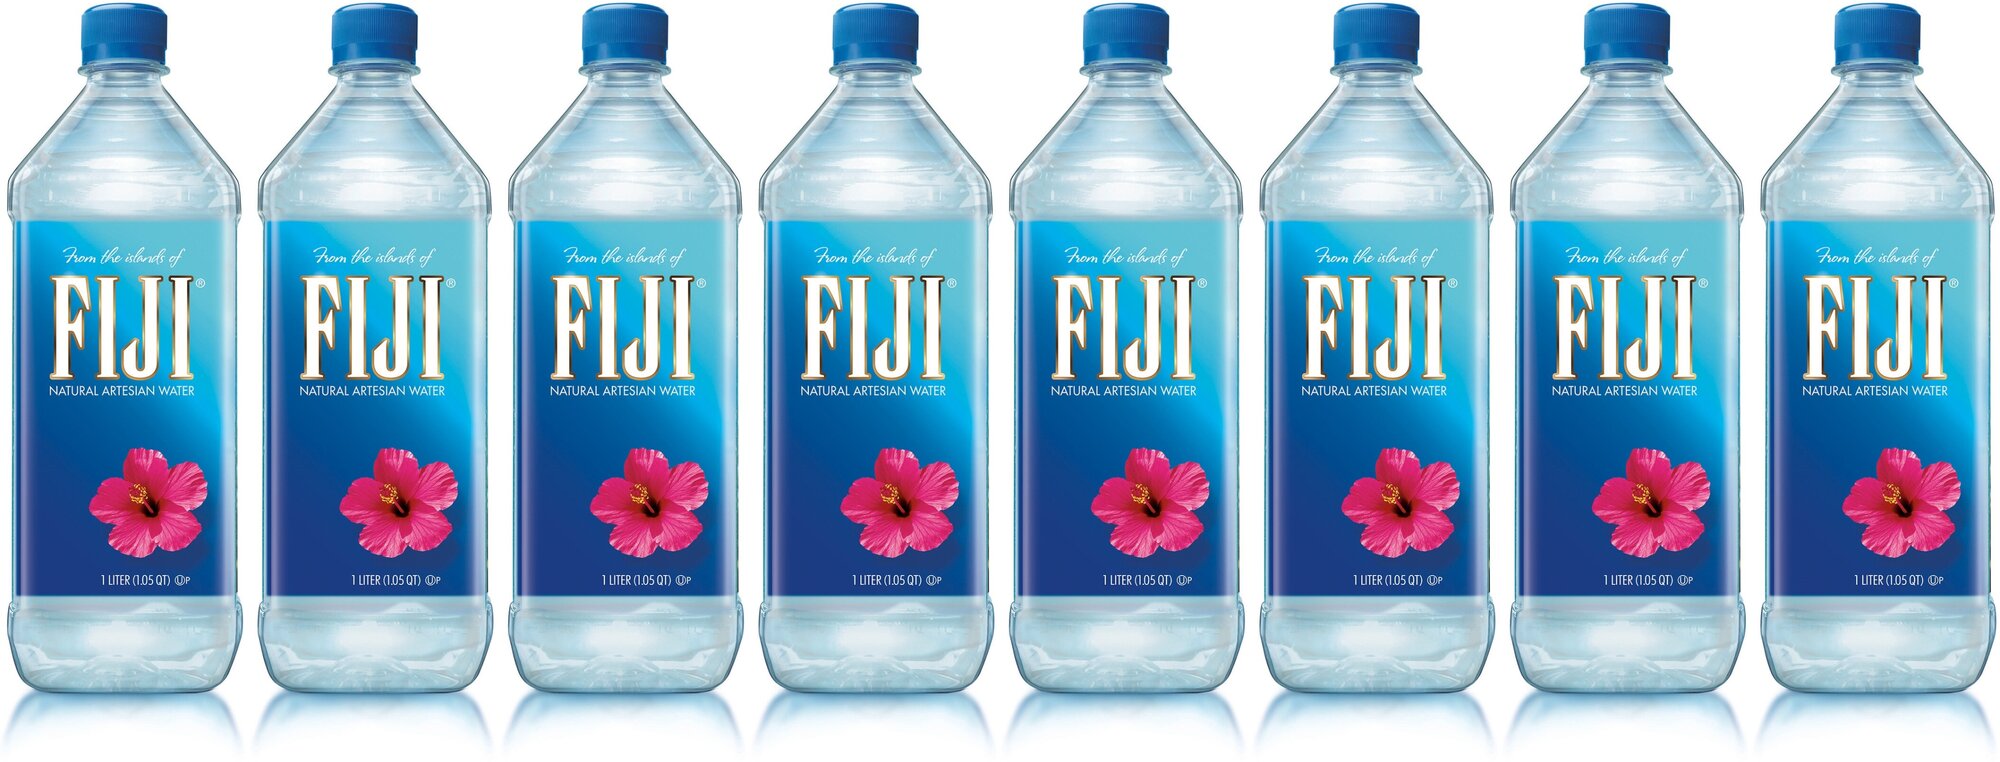 Вода минеральная Фиджи (Fiji) 12шт. по 1,0л, негазированная, пэт